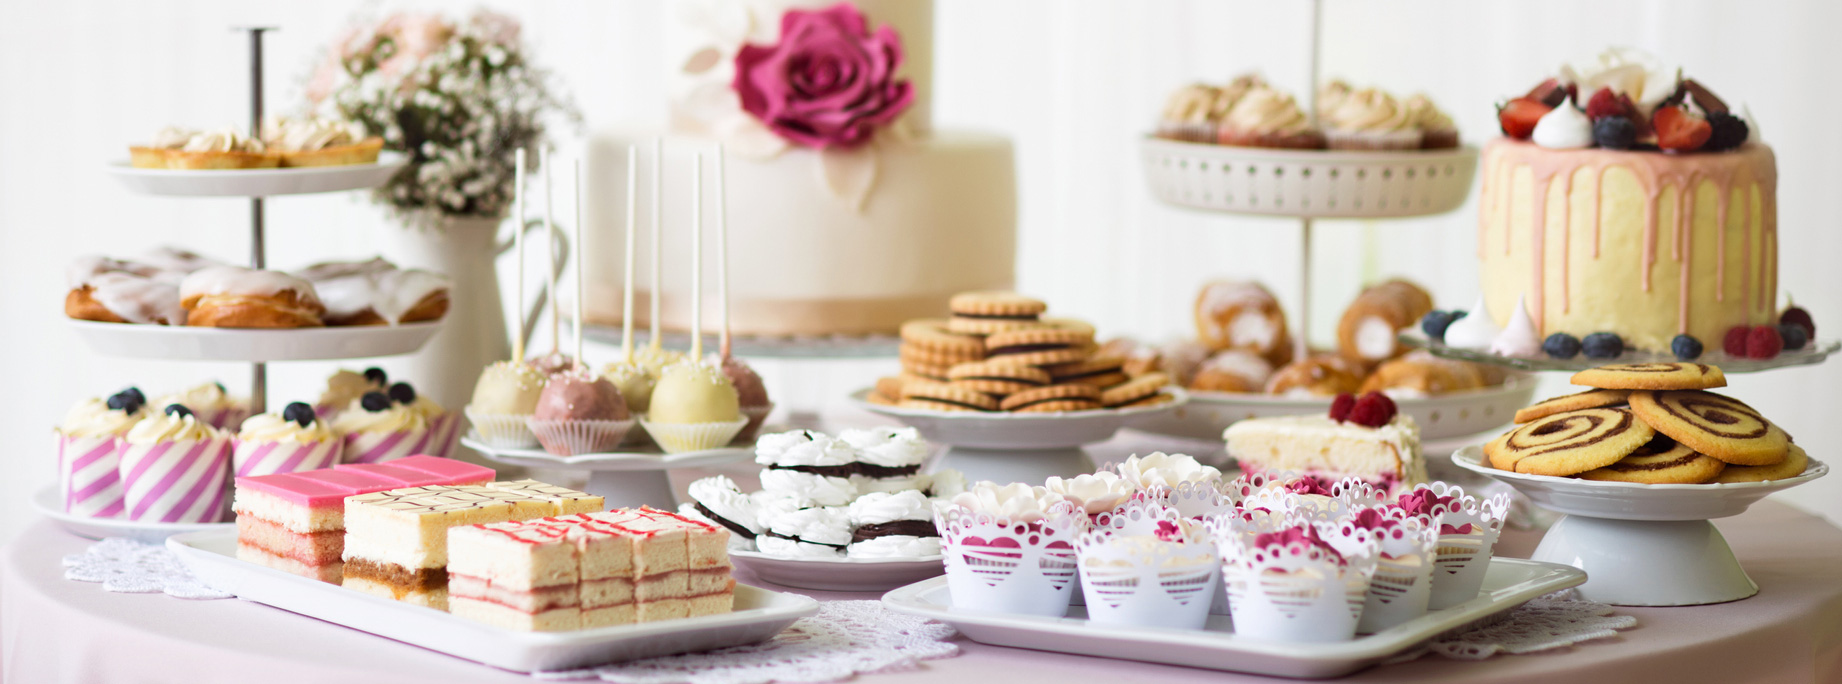 bord med utvalg av kaker og desserter